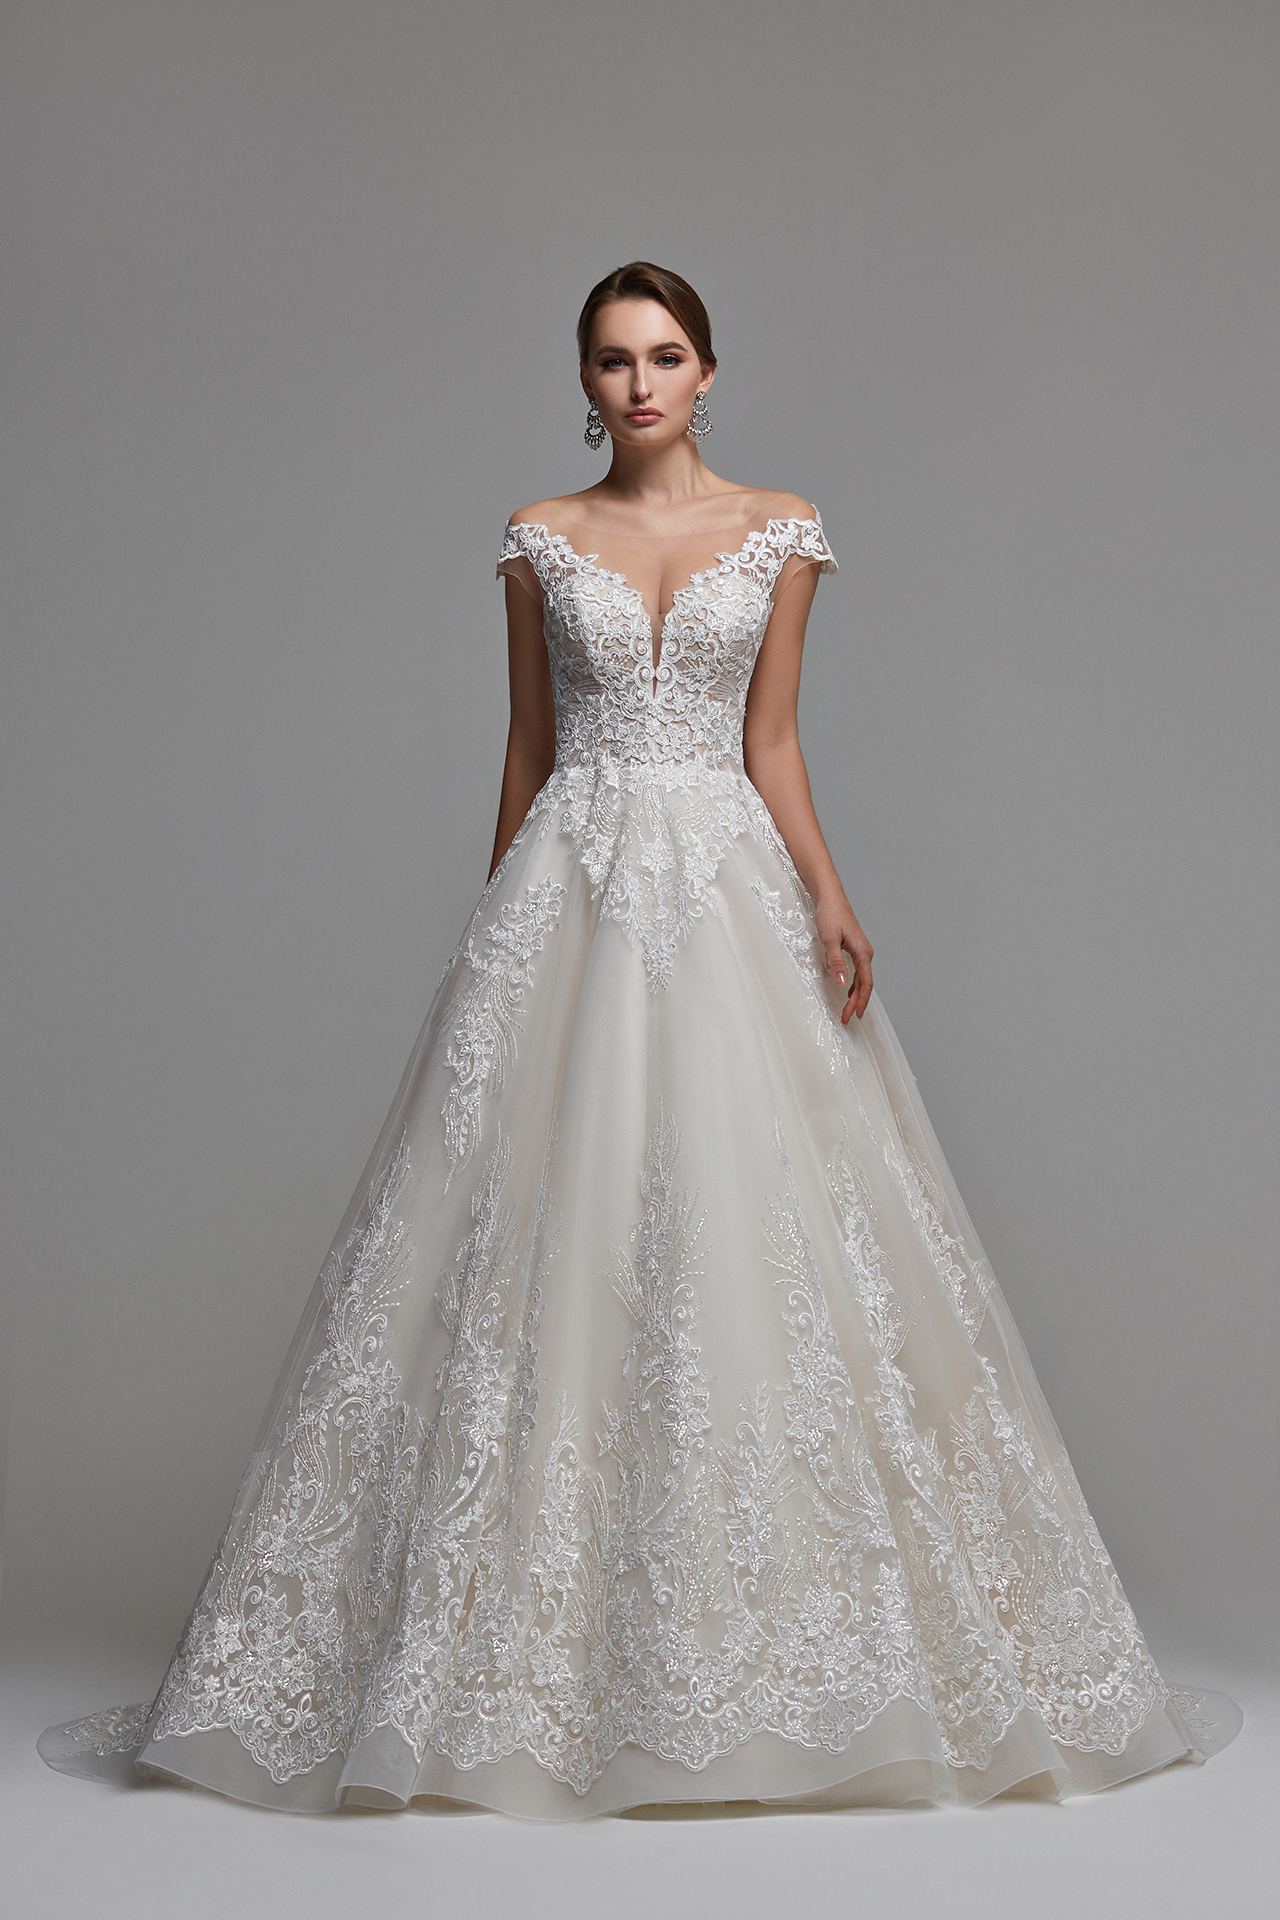 Buy online wedding dress Regina (A-line, off-the-shoulder ...